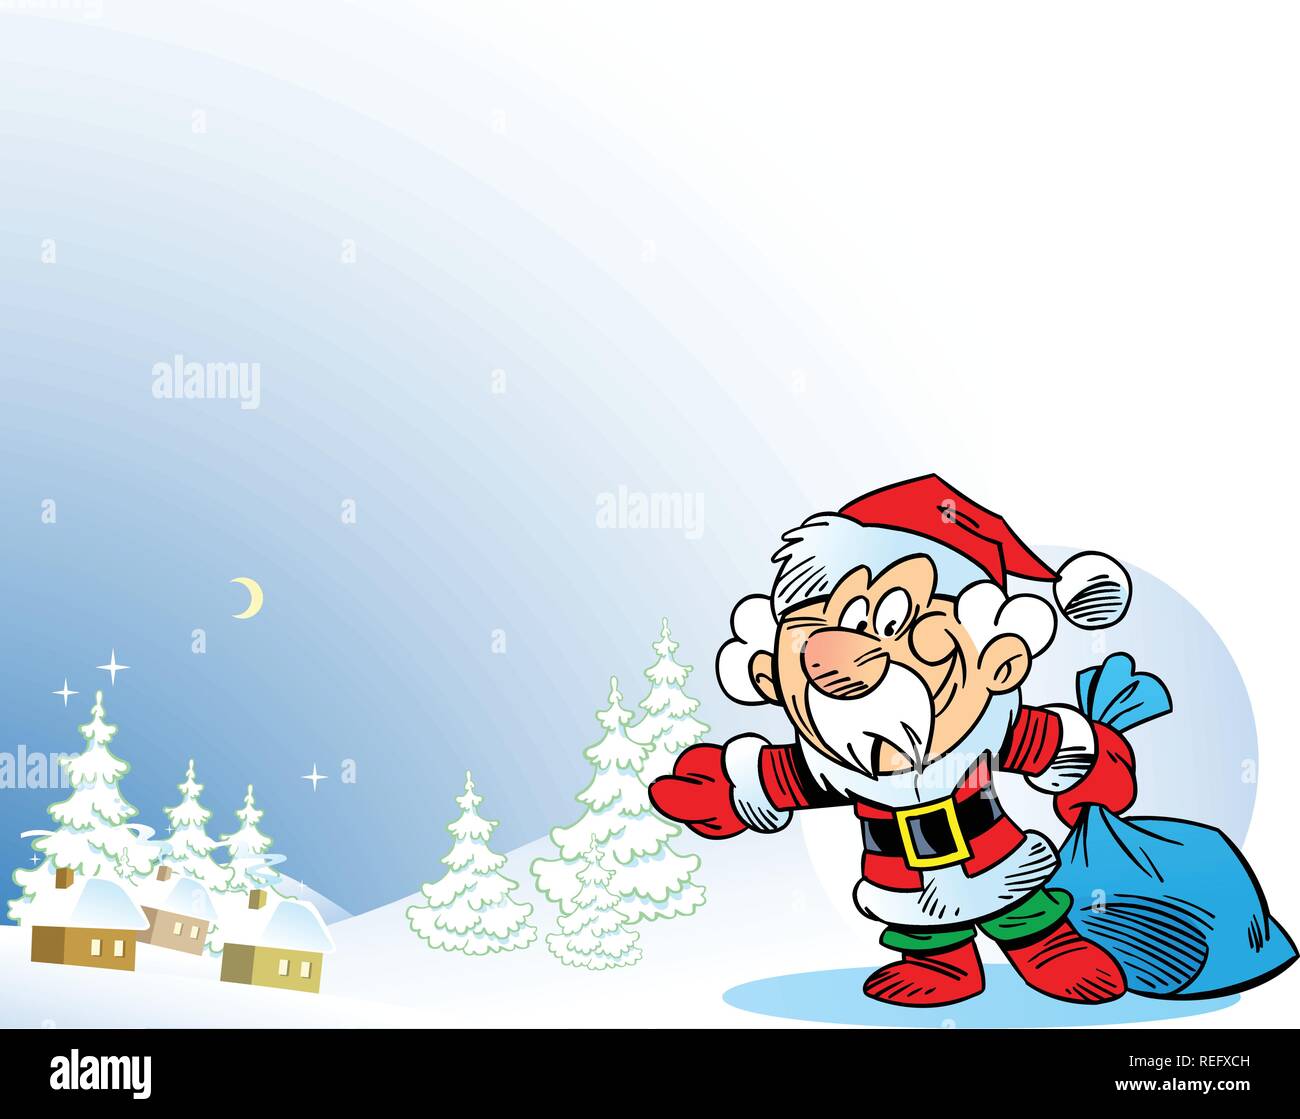 L'illustration présente le Père Noël, qui a porté le sac de cadeaux sous l'arbre de Noël. Illustration faite sur des calques distincts. Illustration de Vecteur